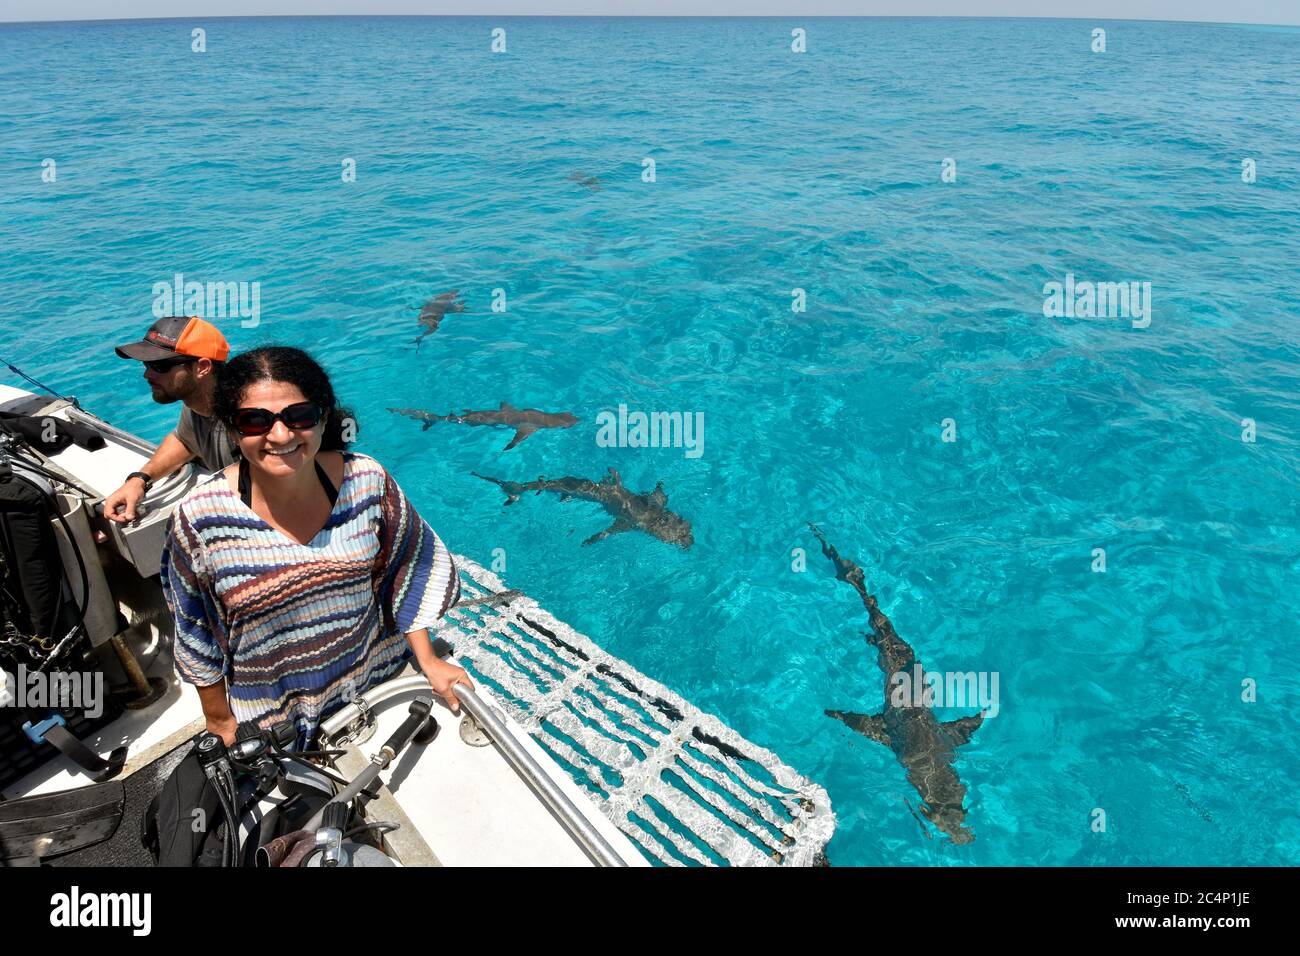 Les gens sur un bateau tandis que les requins de citron, Negapron brevirostris, cercle autour, Tiger Beach, Bahamas Banque D'Images